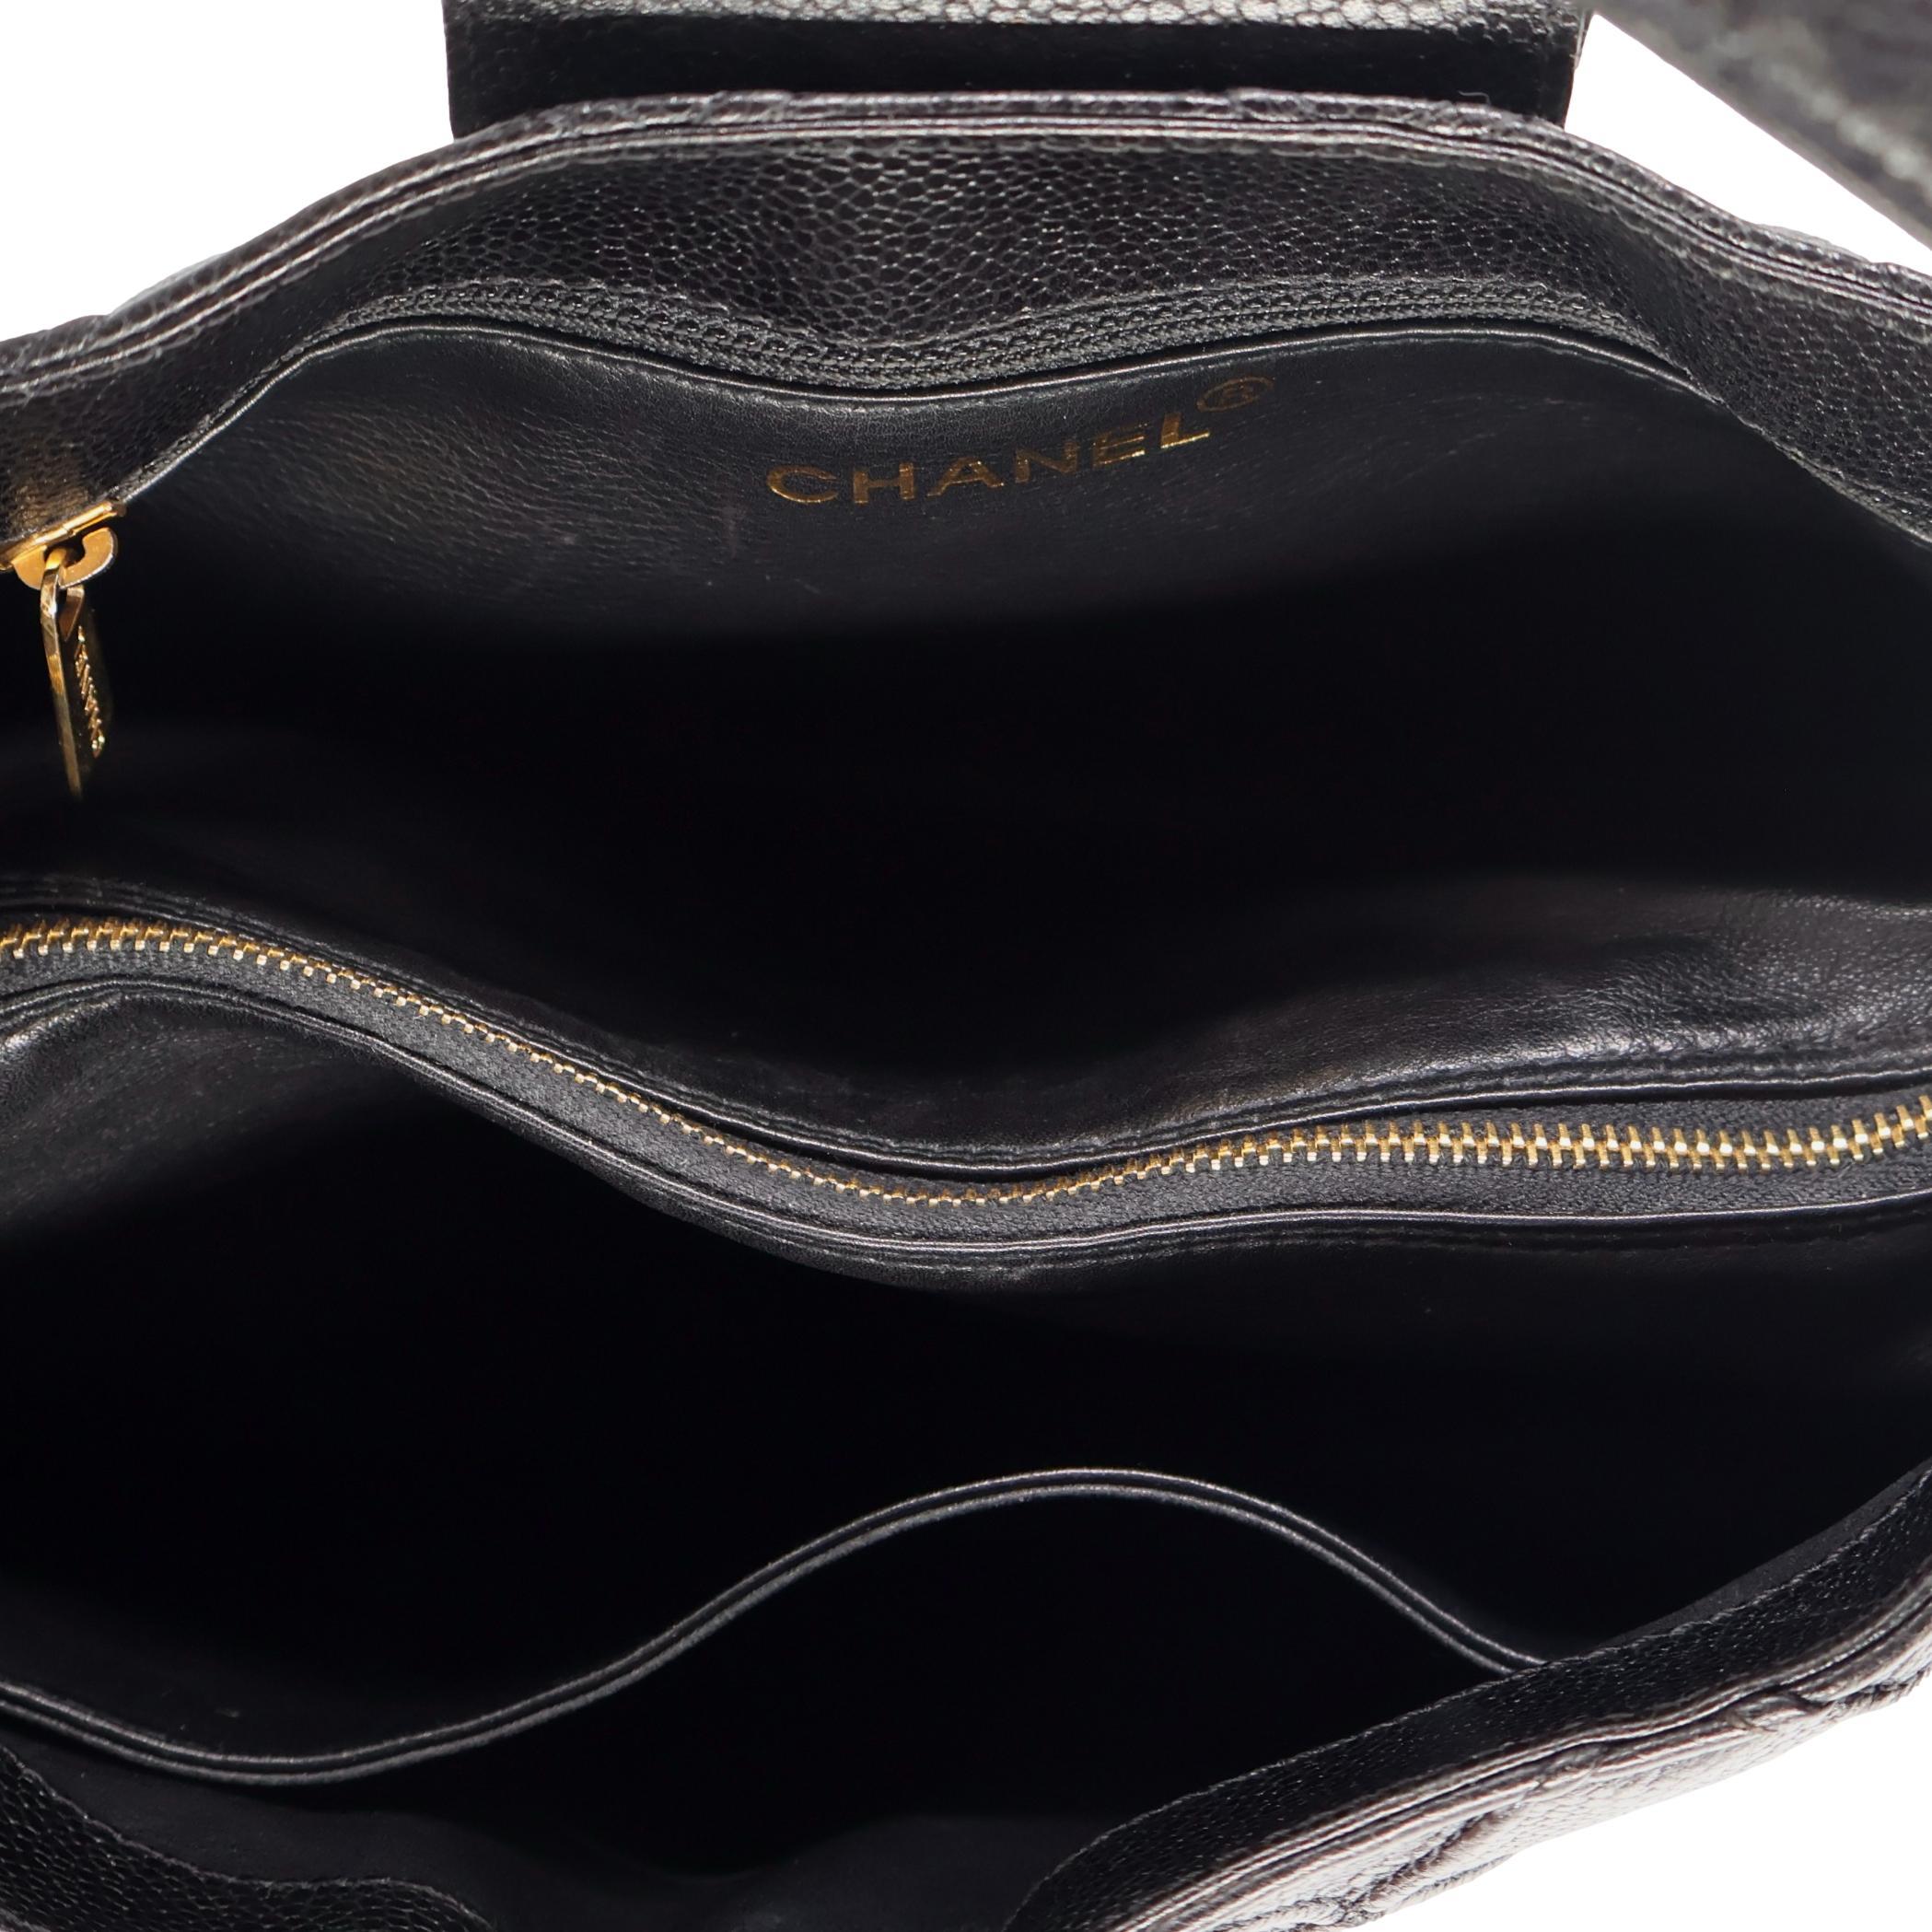 Chanel Vintage Black Reverse Quilted Caviar Leather Shoulder Bag, 1996 - 1997. For Sale 5